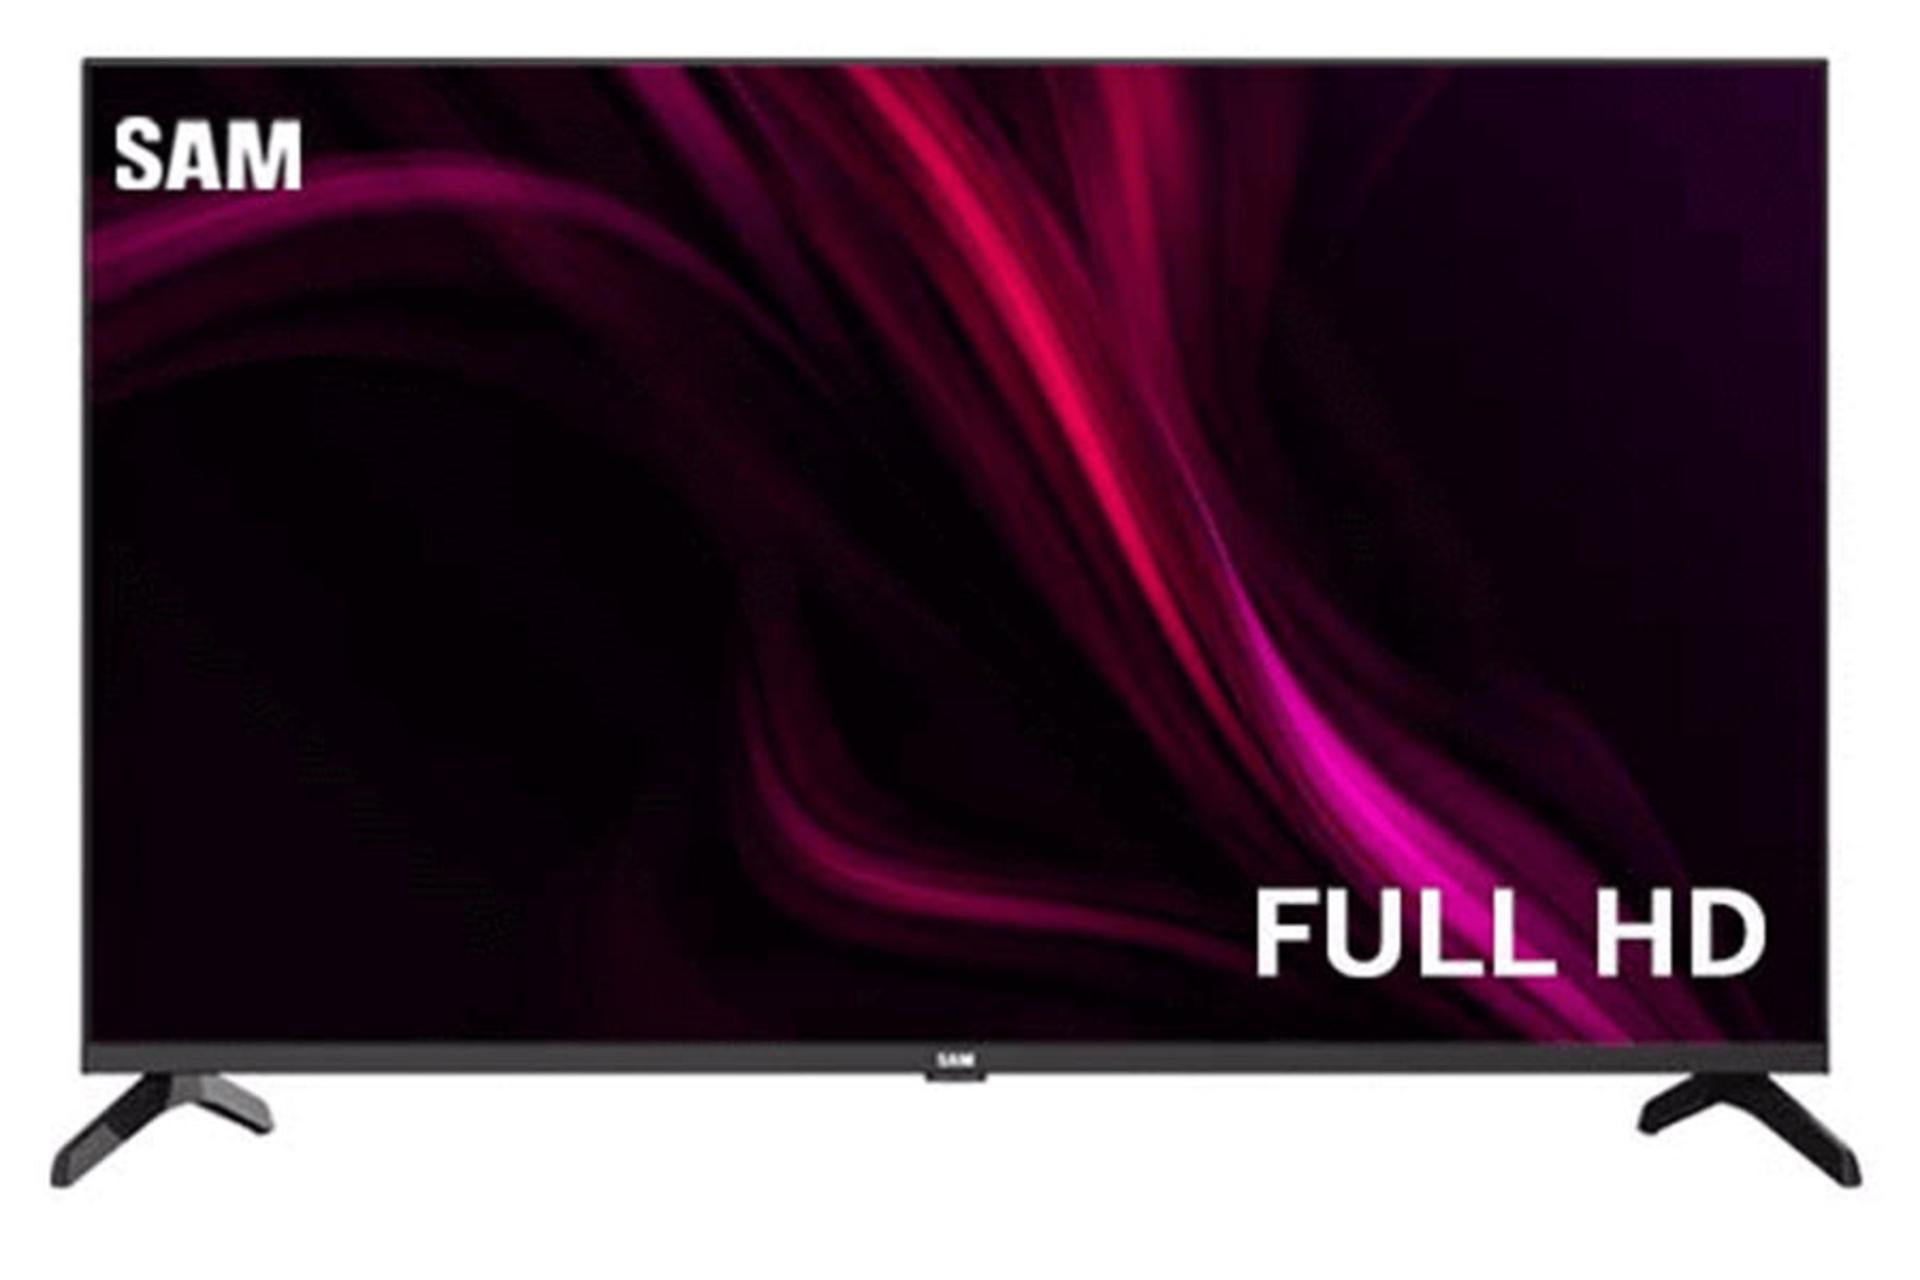 قیمت تلویزیون سام الکترونیک T5700 مدل 43 اینچ + مشخصات